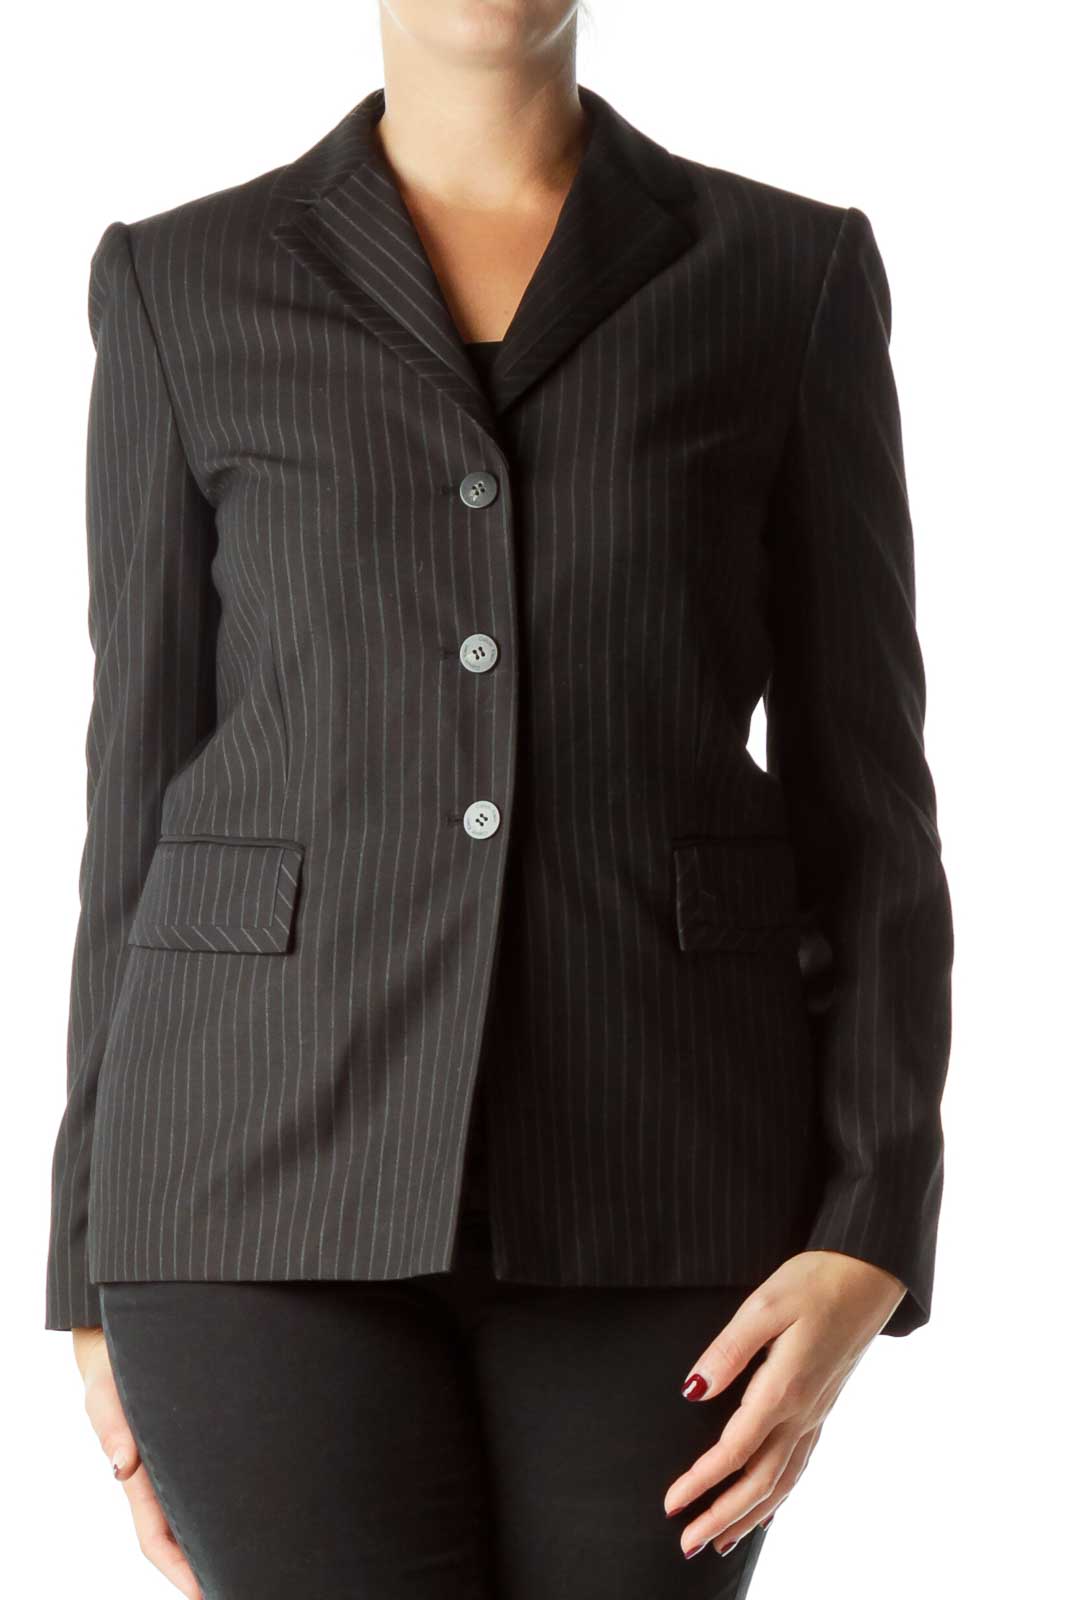 Black Pinstripe Suit Jacket Front